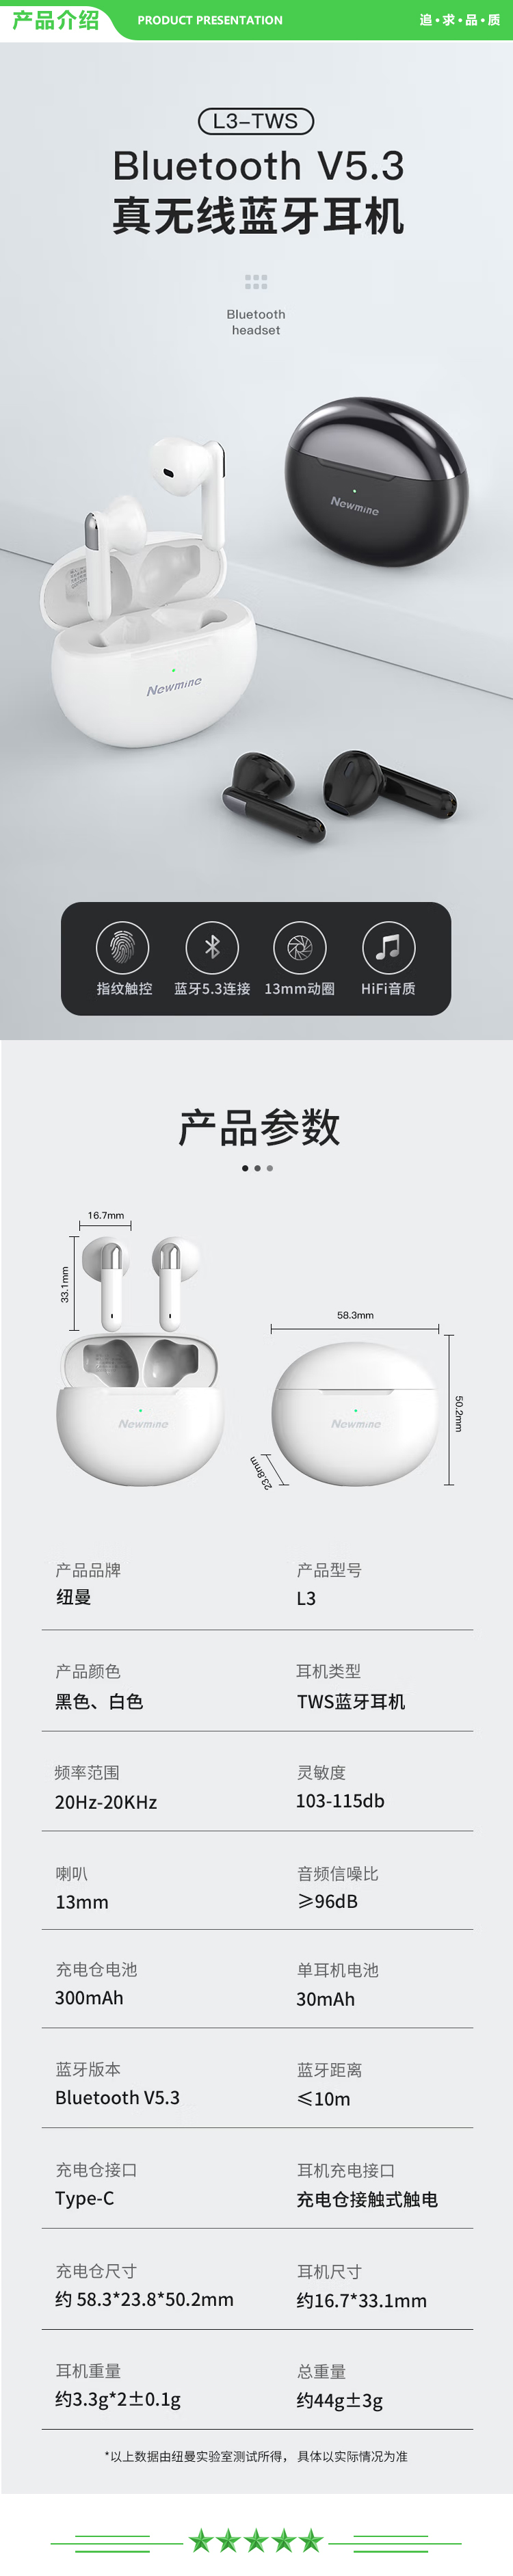 纽曼 Newmine L3 白色 真无线蓝牙耳机 半入耳式耳机 超长待机续航跑步运动适用于苹果华为小米手机的耳机  .jpg